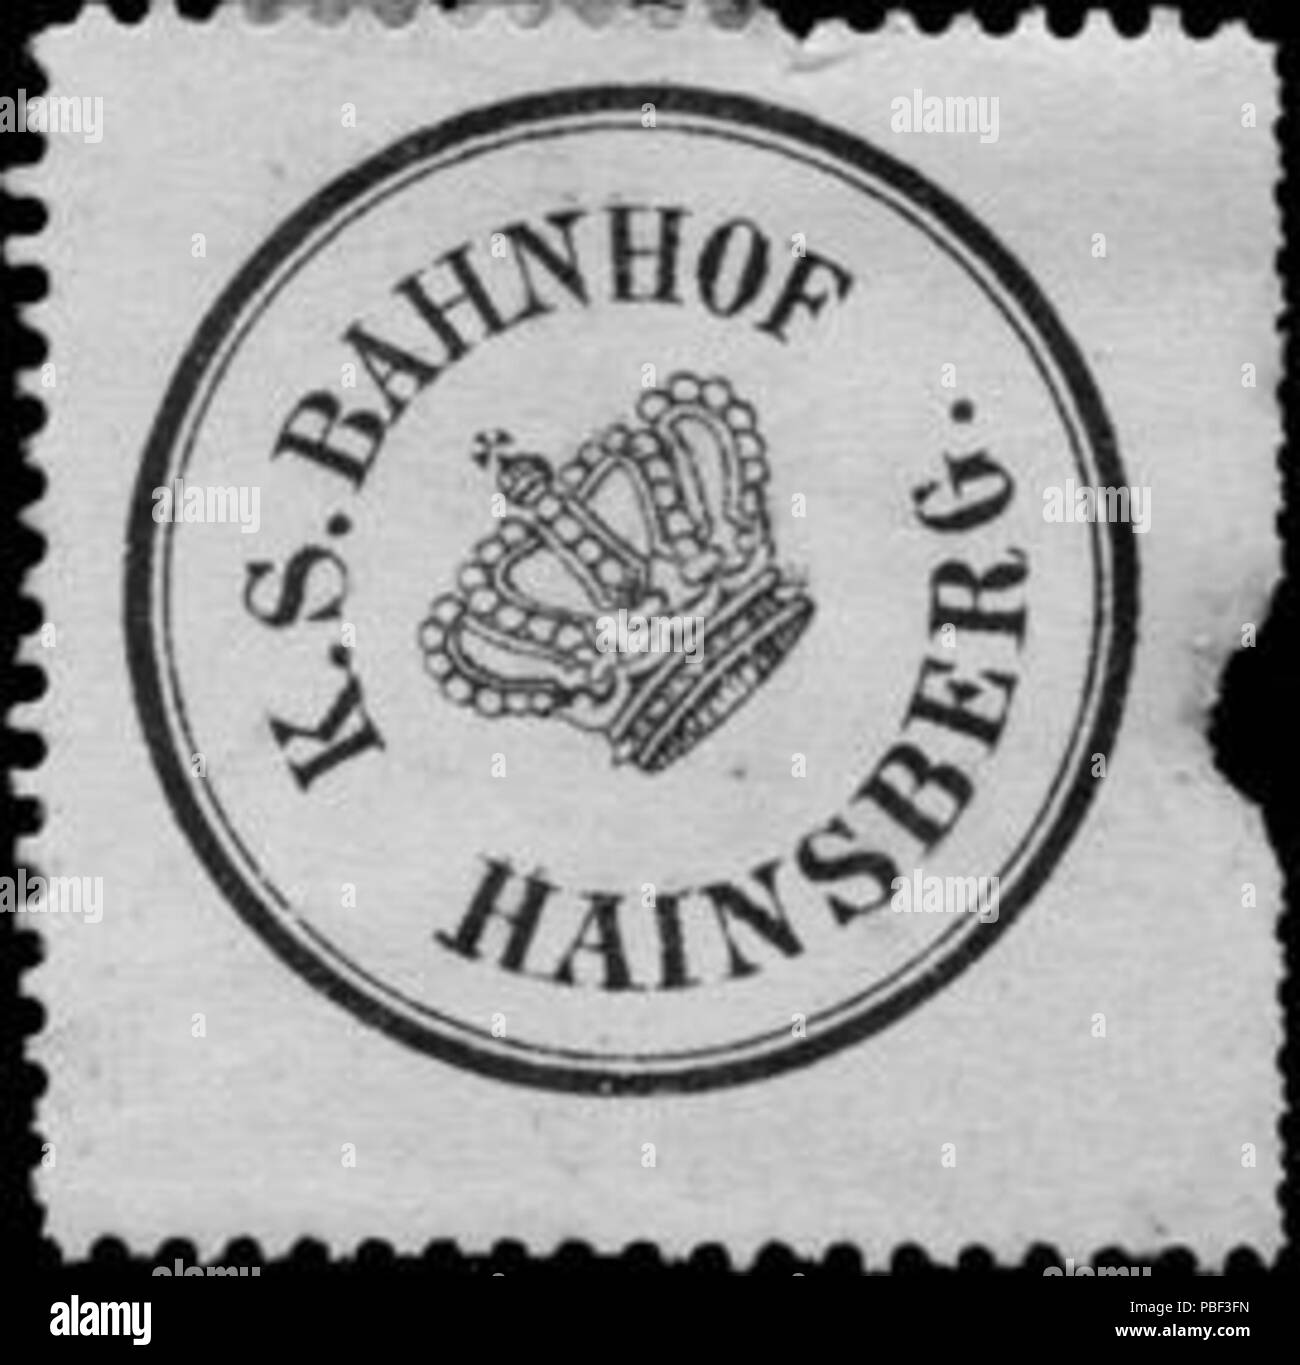 Alte Briefverschlussmarke aus Papier, welche seit ca. 1850 von Behoerden, Anwaelten, Notaren und Firmen zum verschliessen der Post verwendet wurde. 1463 Siegelmarke Königlich Sächsischer Bahnhof Hainsberg W0205532 Foto Stock